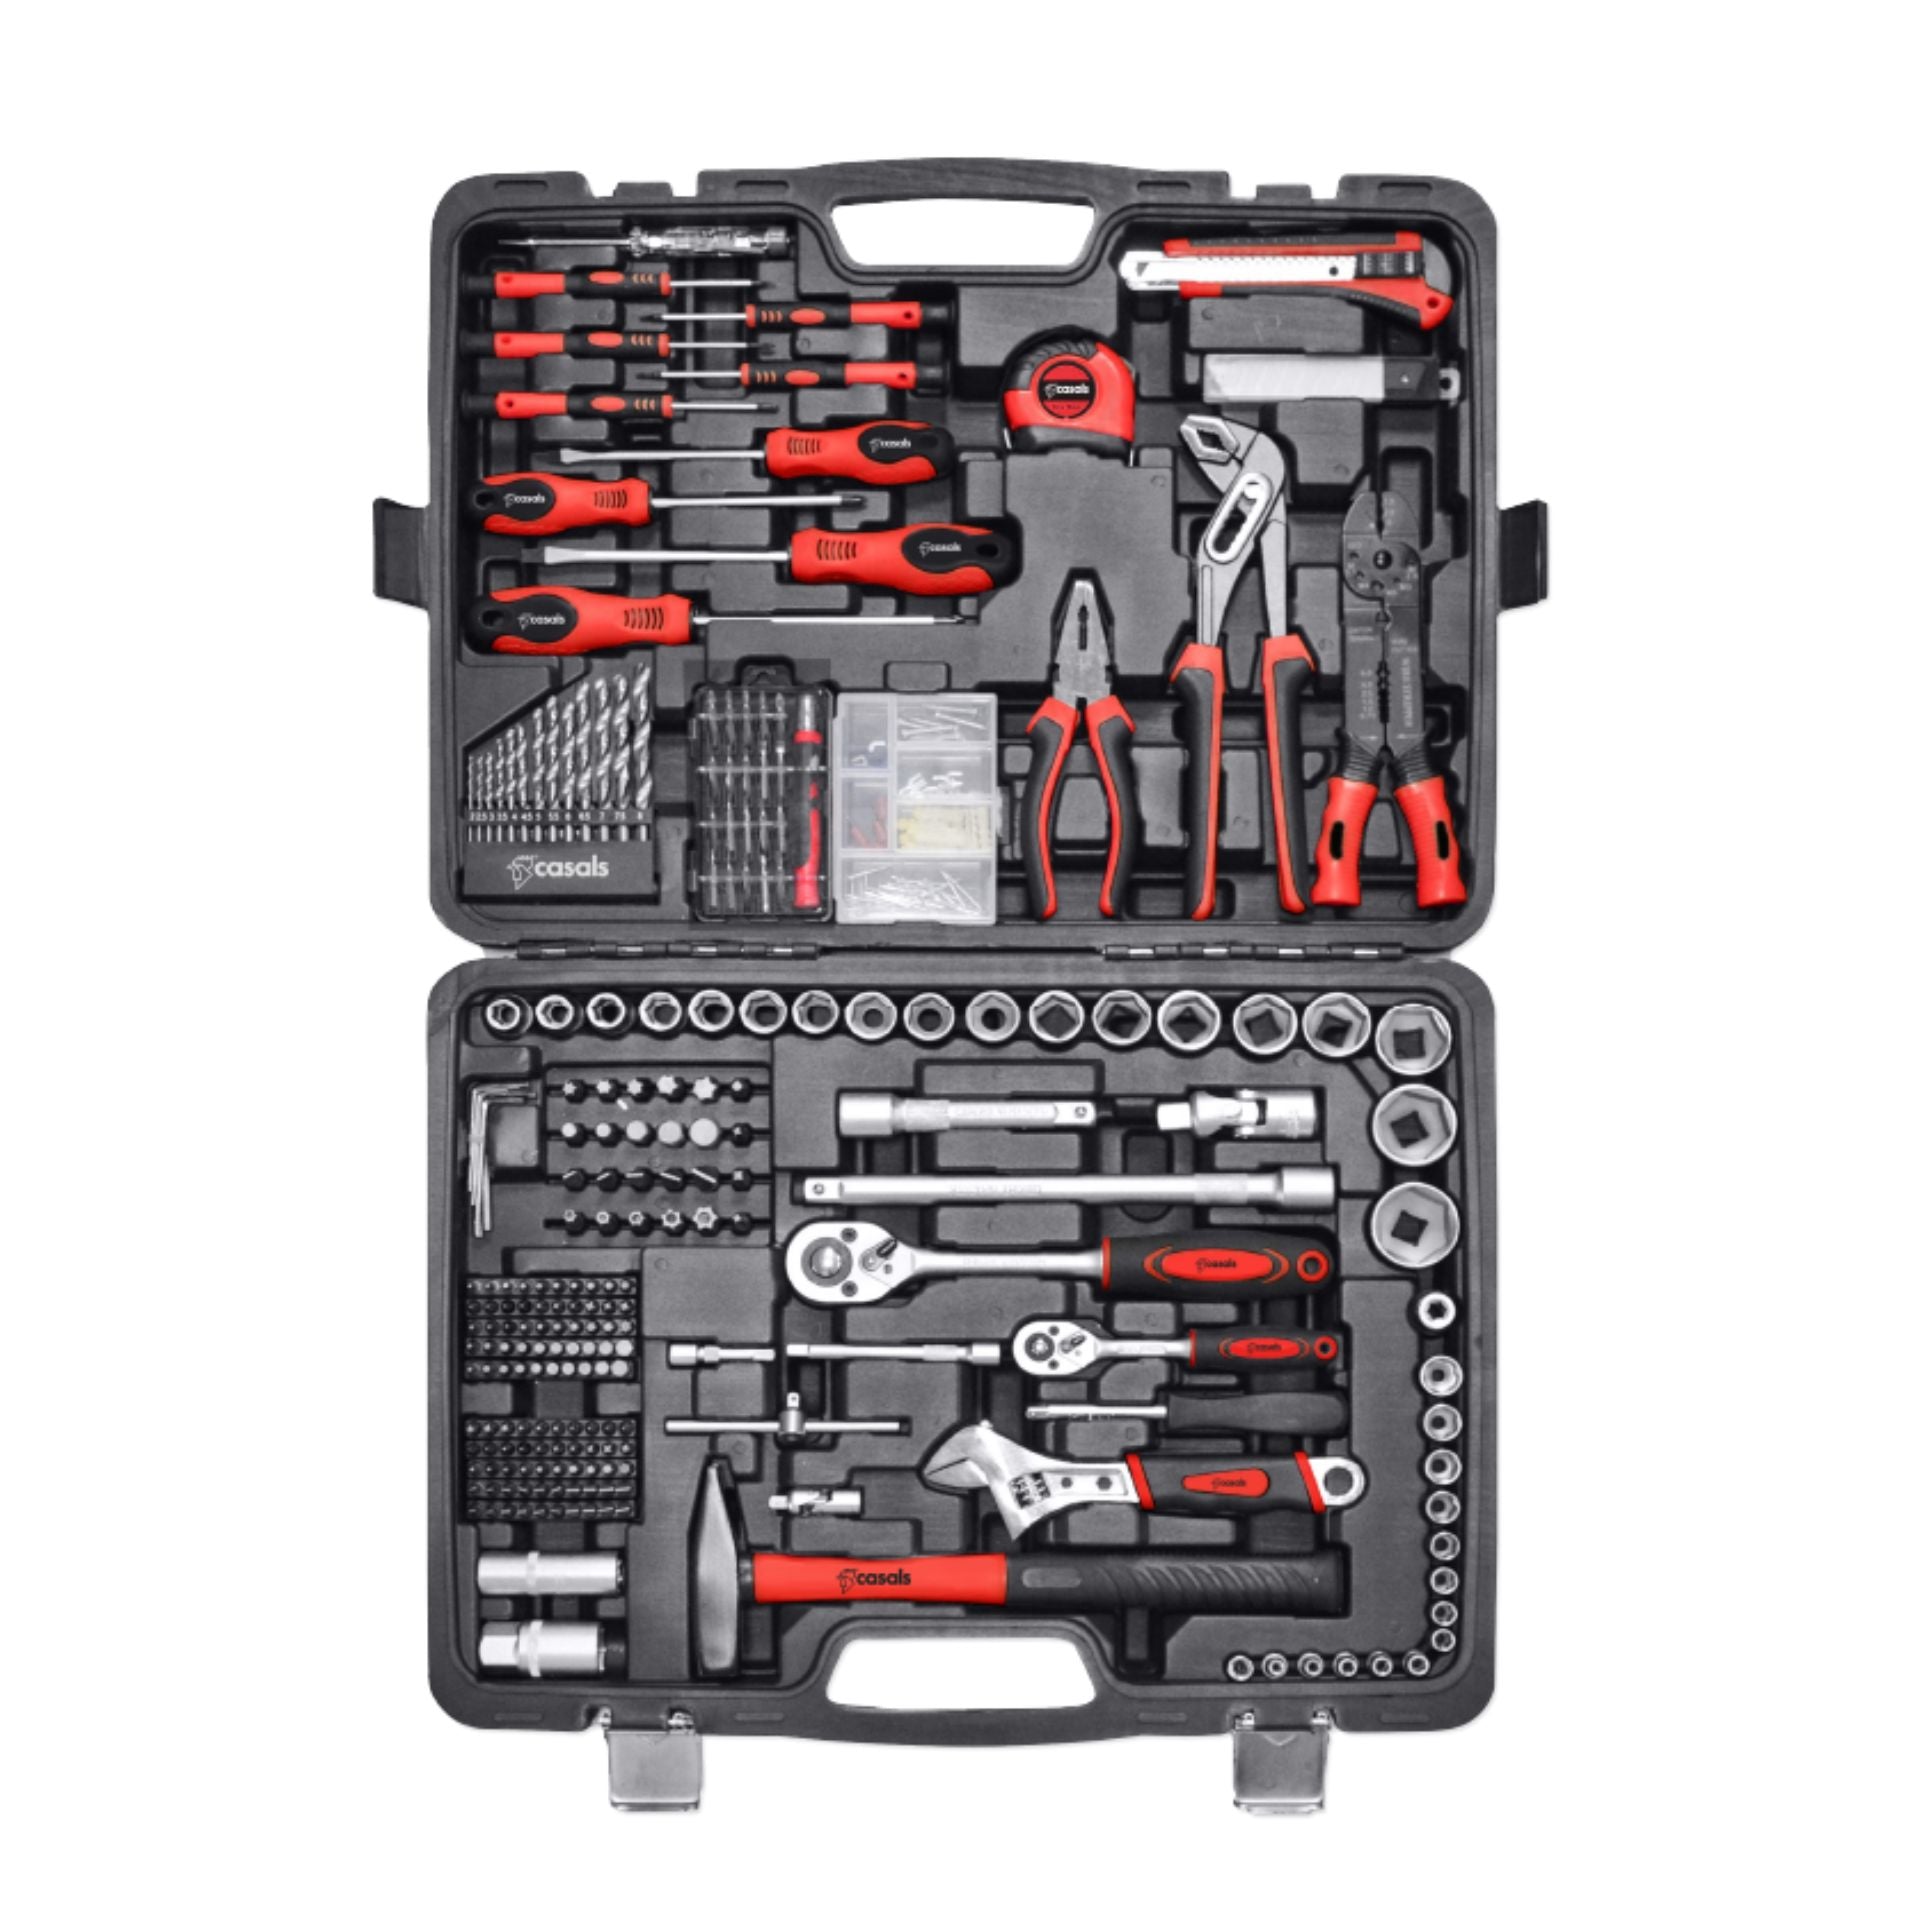 Caja de herramientas HH94 – Casals Tools